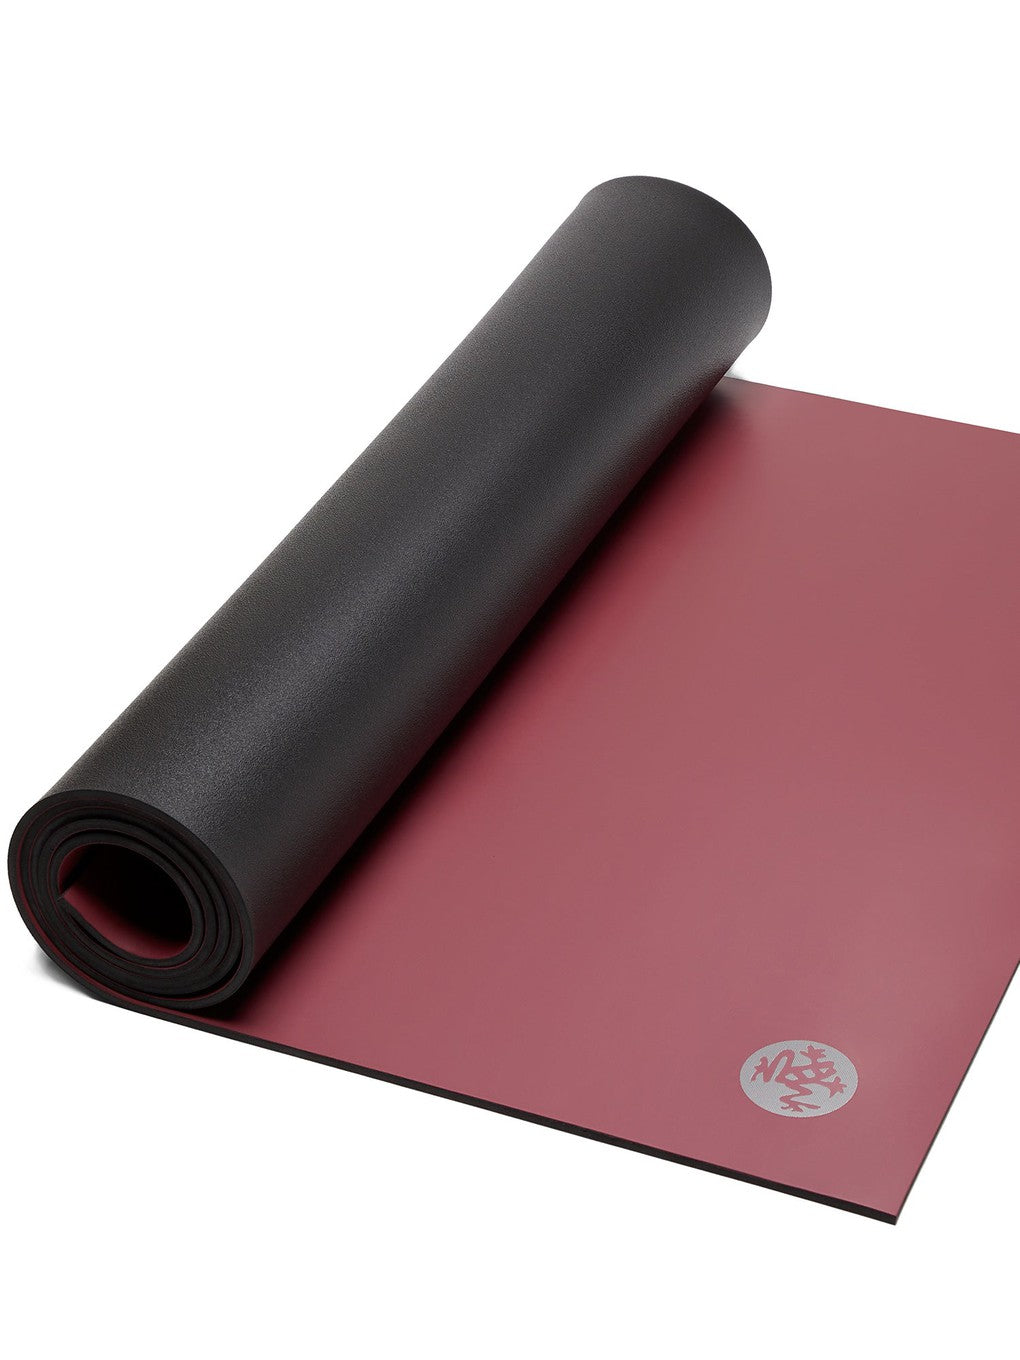 Manduka] GRP ADAPT Grip Yoga Mat (5mm) Hot Yoga Manduka - Puravida